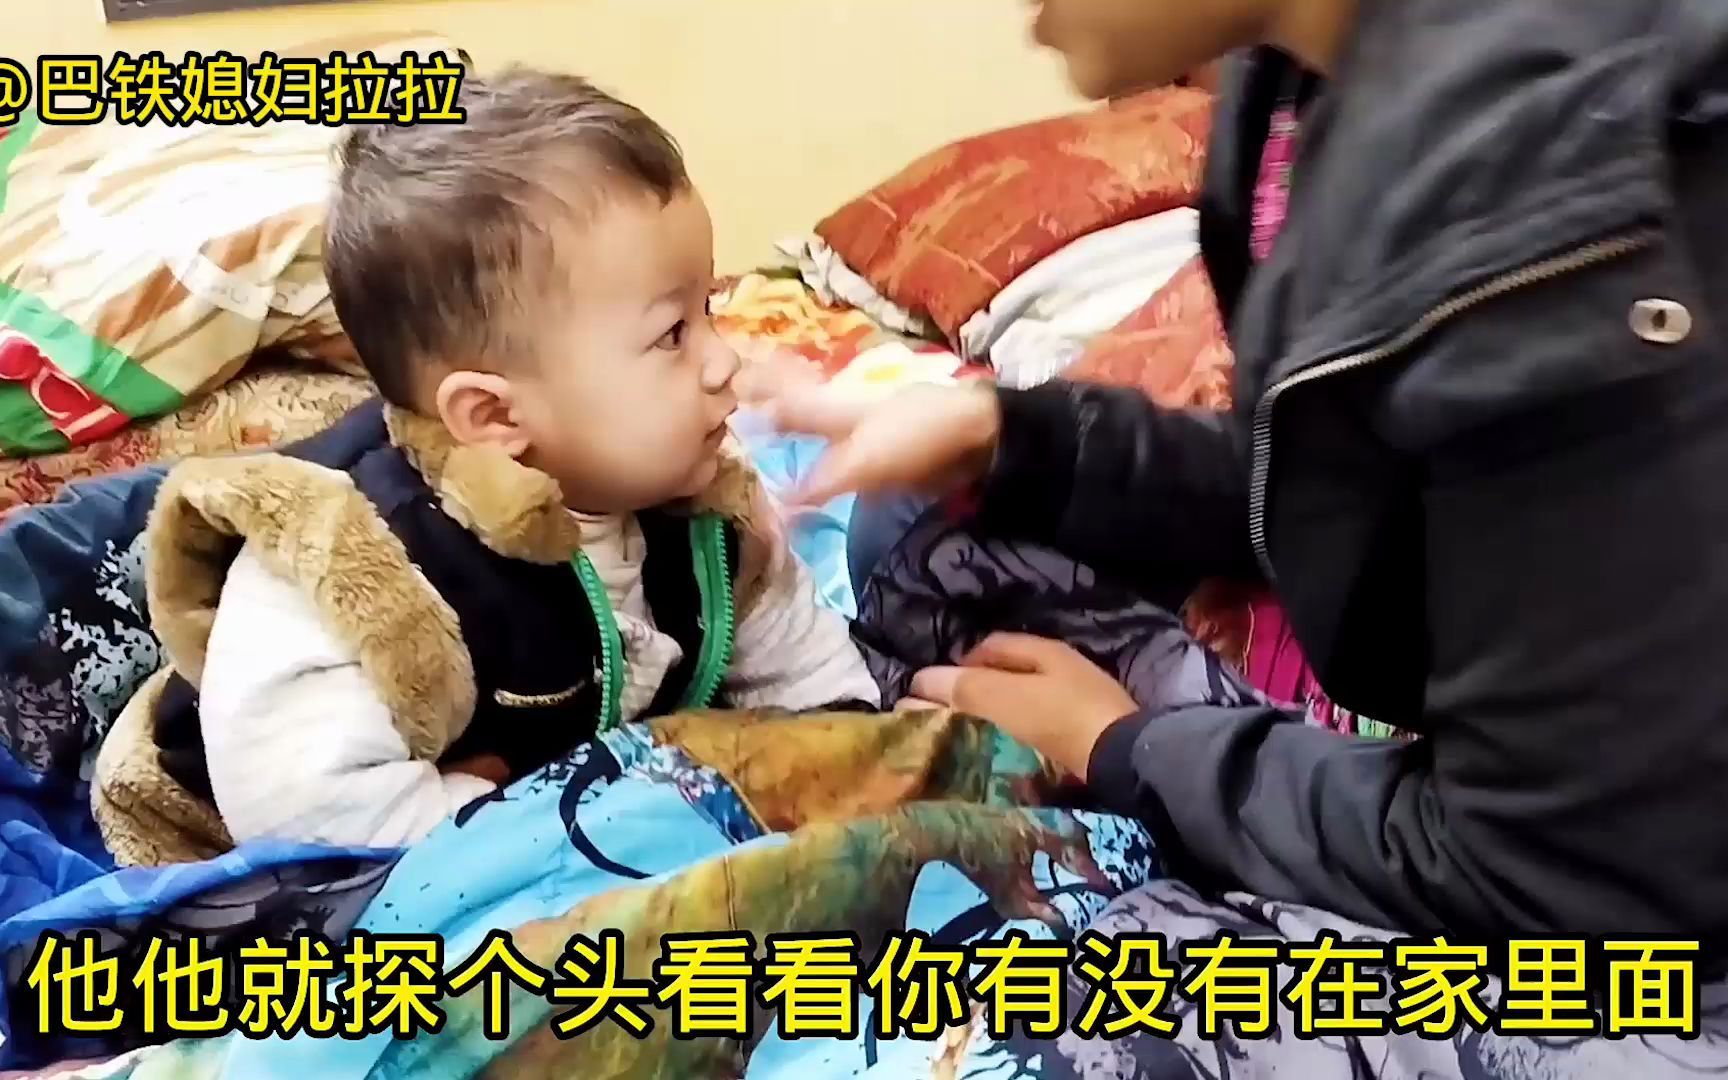 中国免费给巴铁50万支疫苗，他们真的知道吗？采访路人很意外！_哔哩哔哩_bilibili